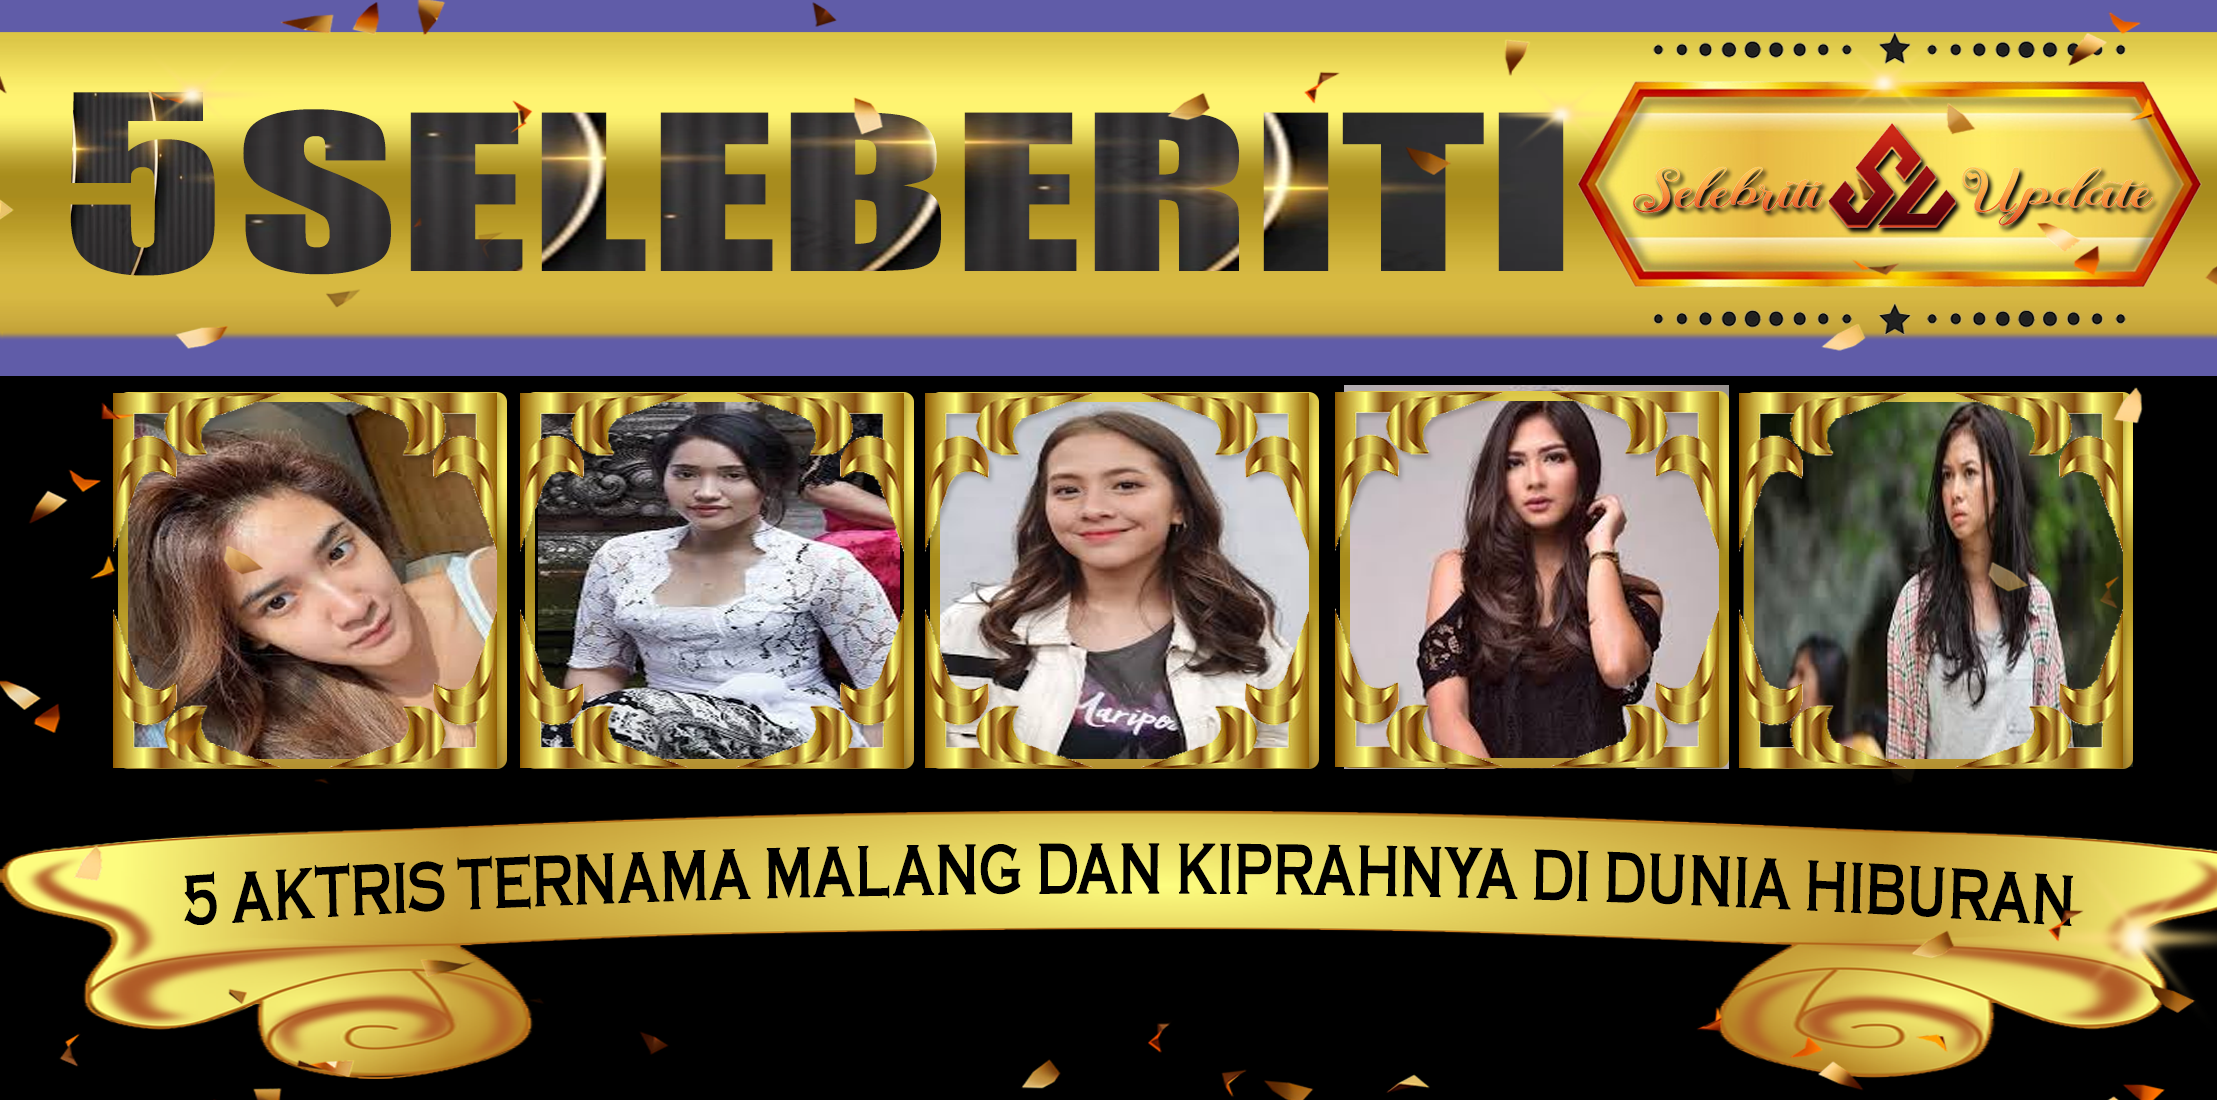 5 Aktris Ternama Malang